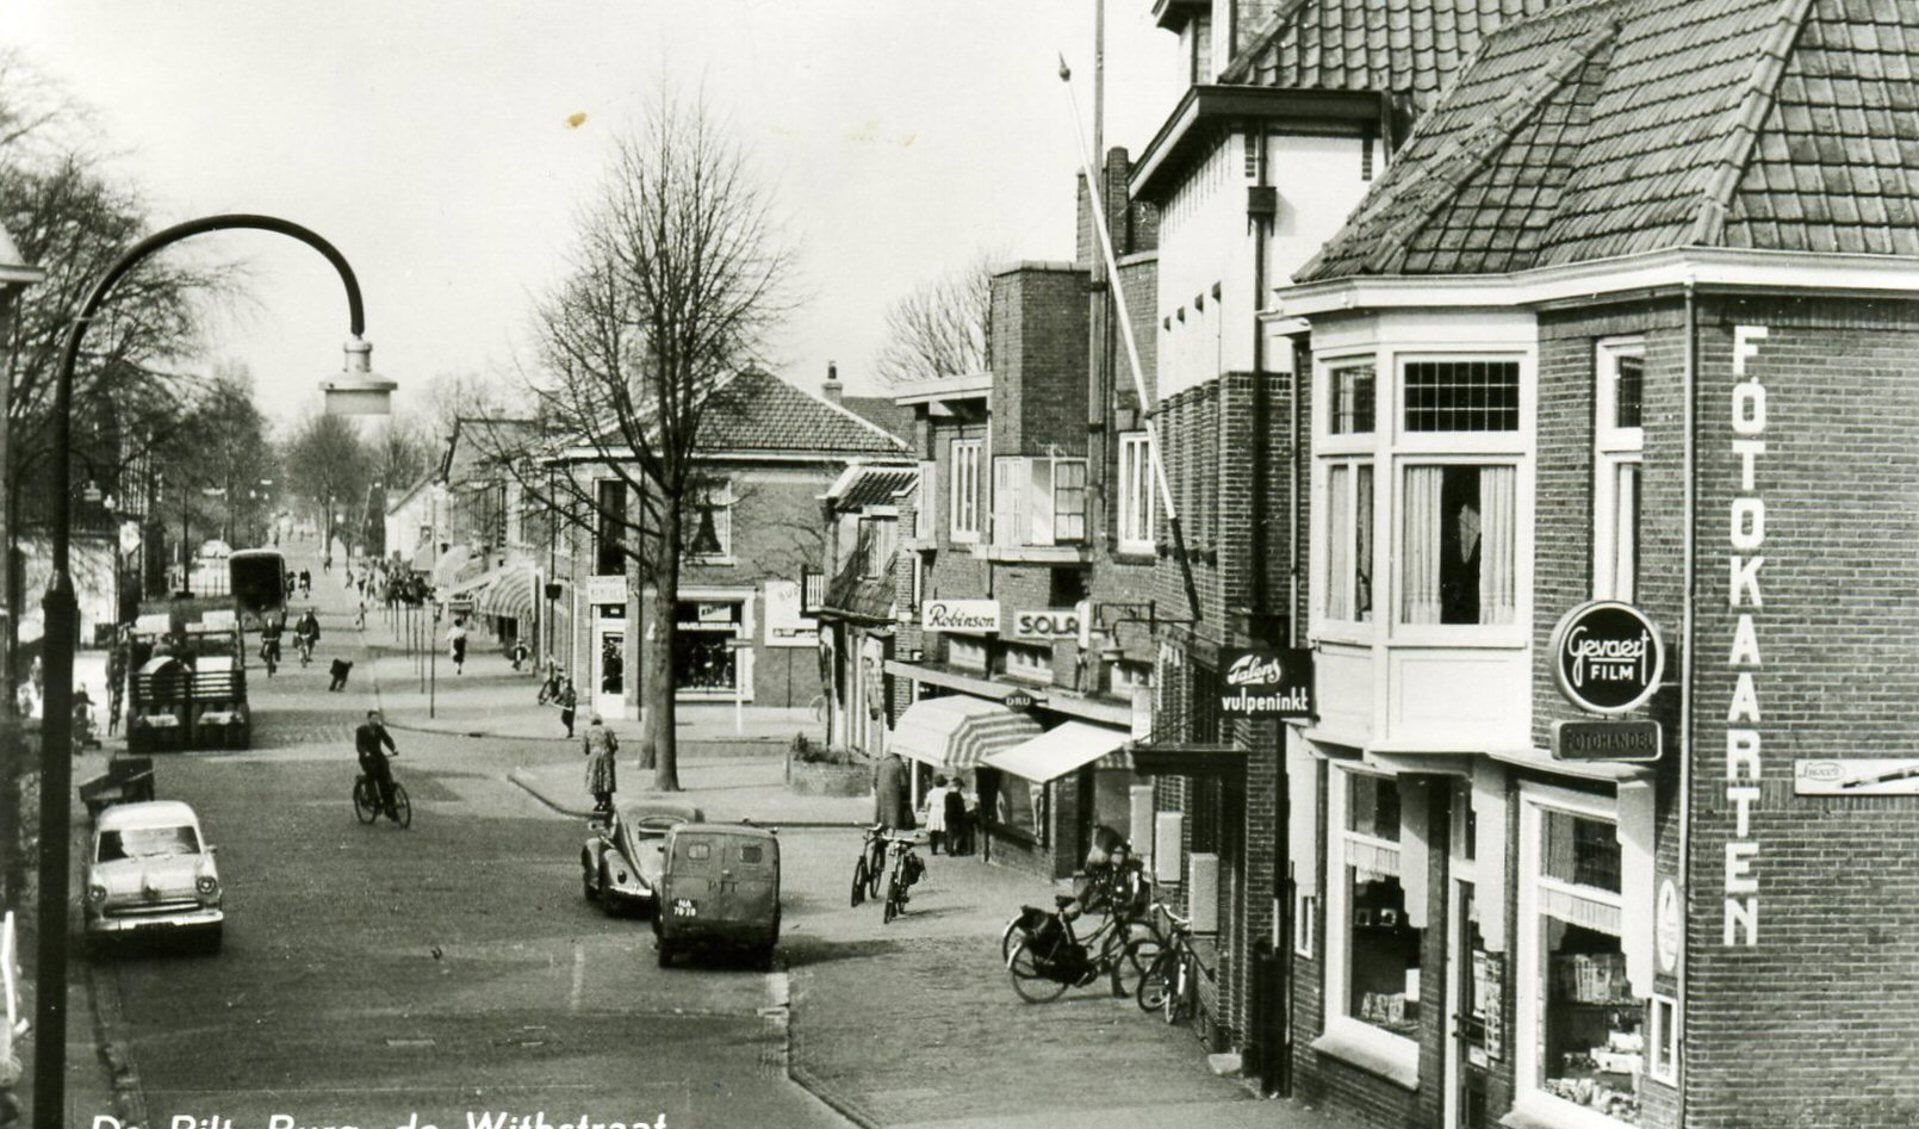  Deze foto uit 1959 (Burg, de Withstraat 8 en hoger) toont rechts het oude postkantoor dat in 1912 naar de Burg. de Withstraat verhuisde en hier bleef tot einde jaren zestig. Toen deze foto genomen werd, was het nog een echte winkelstraat. 